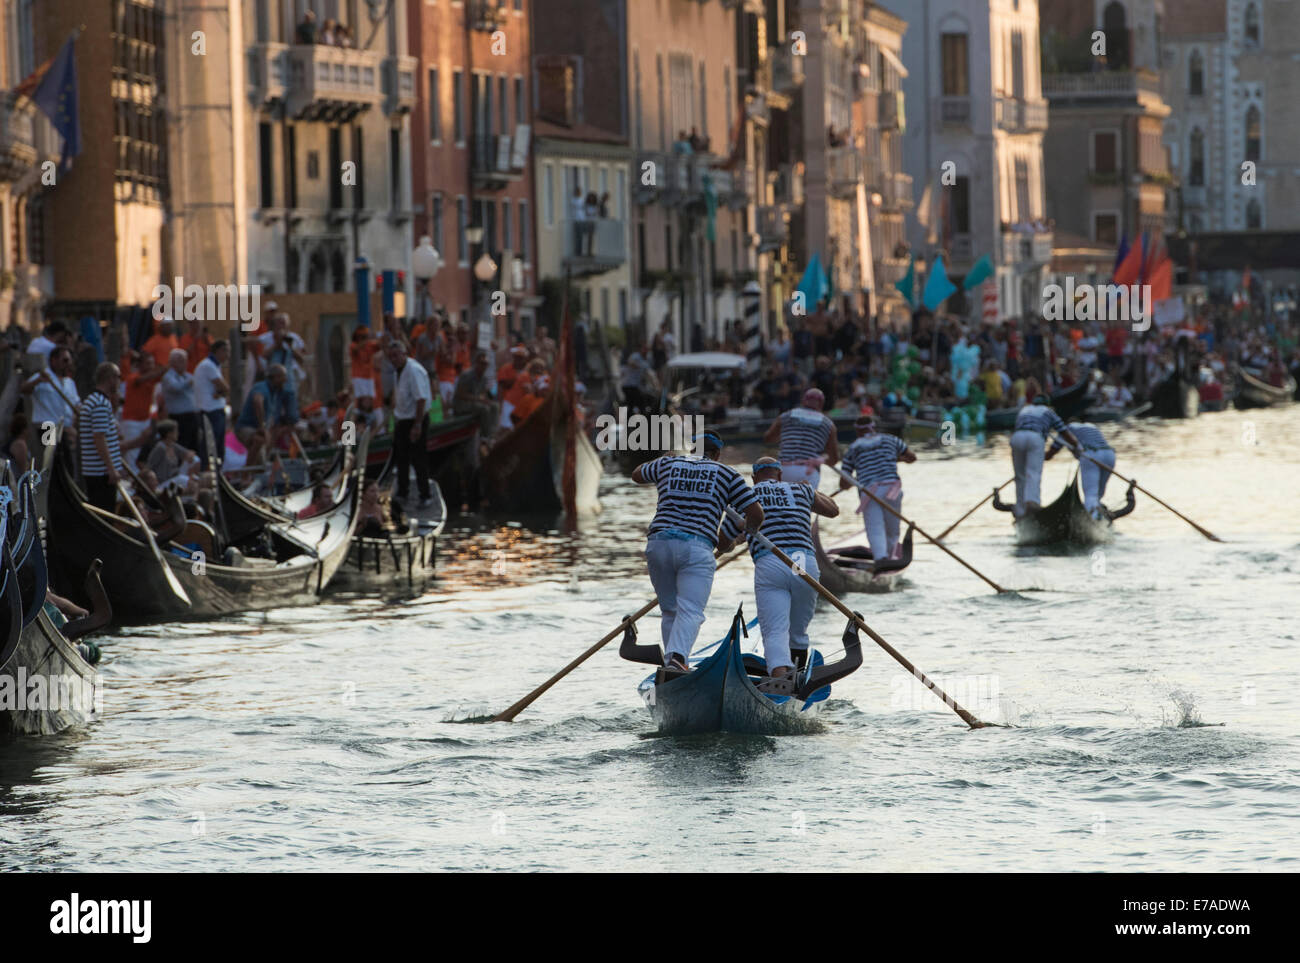 La finale "Gondolini' gara di canottaggio presso la Regata Storica di Venezia, Italia Foto Stock